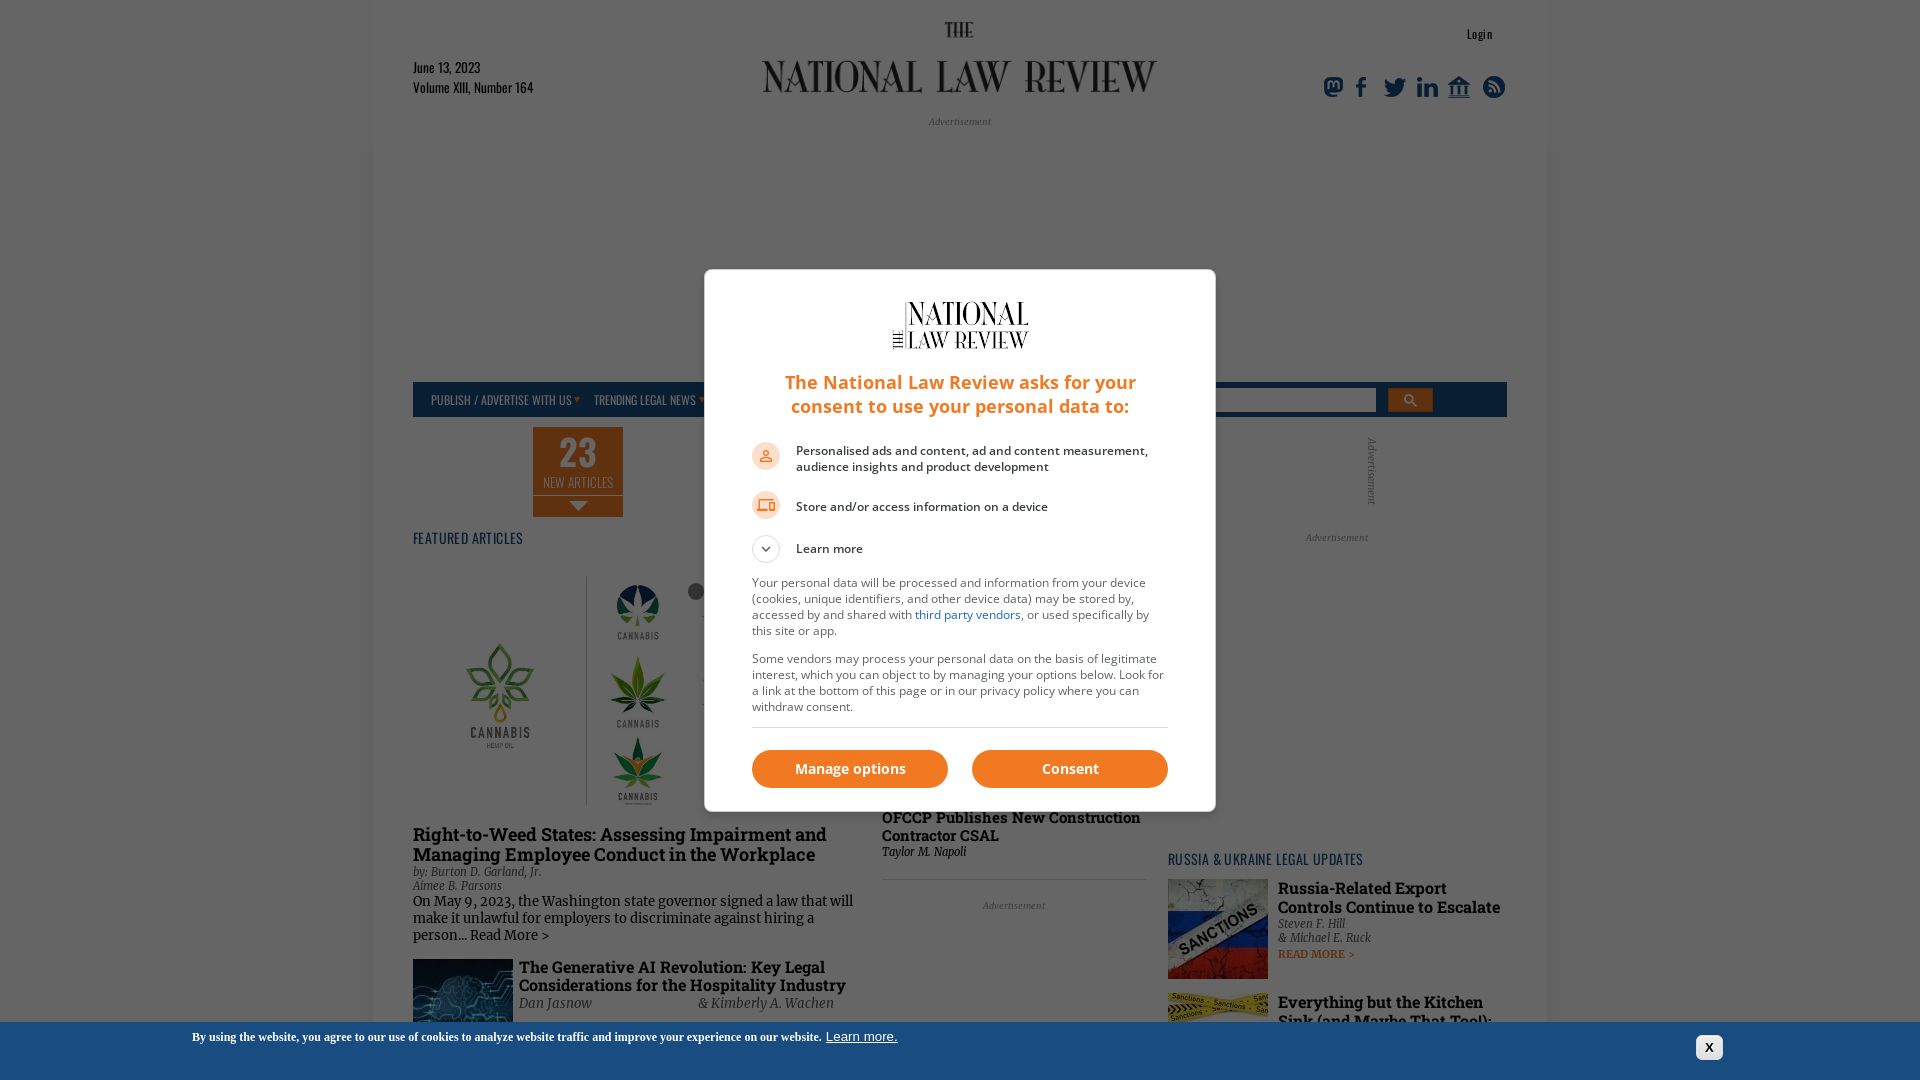 Stato del sito web natlawreview.com è   ONLINE